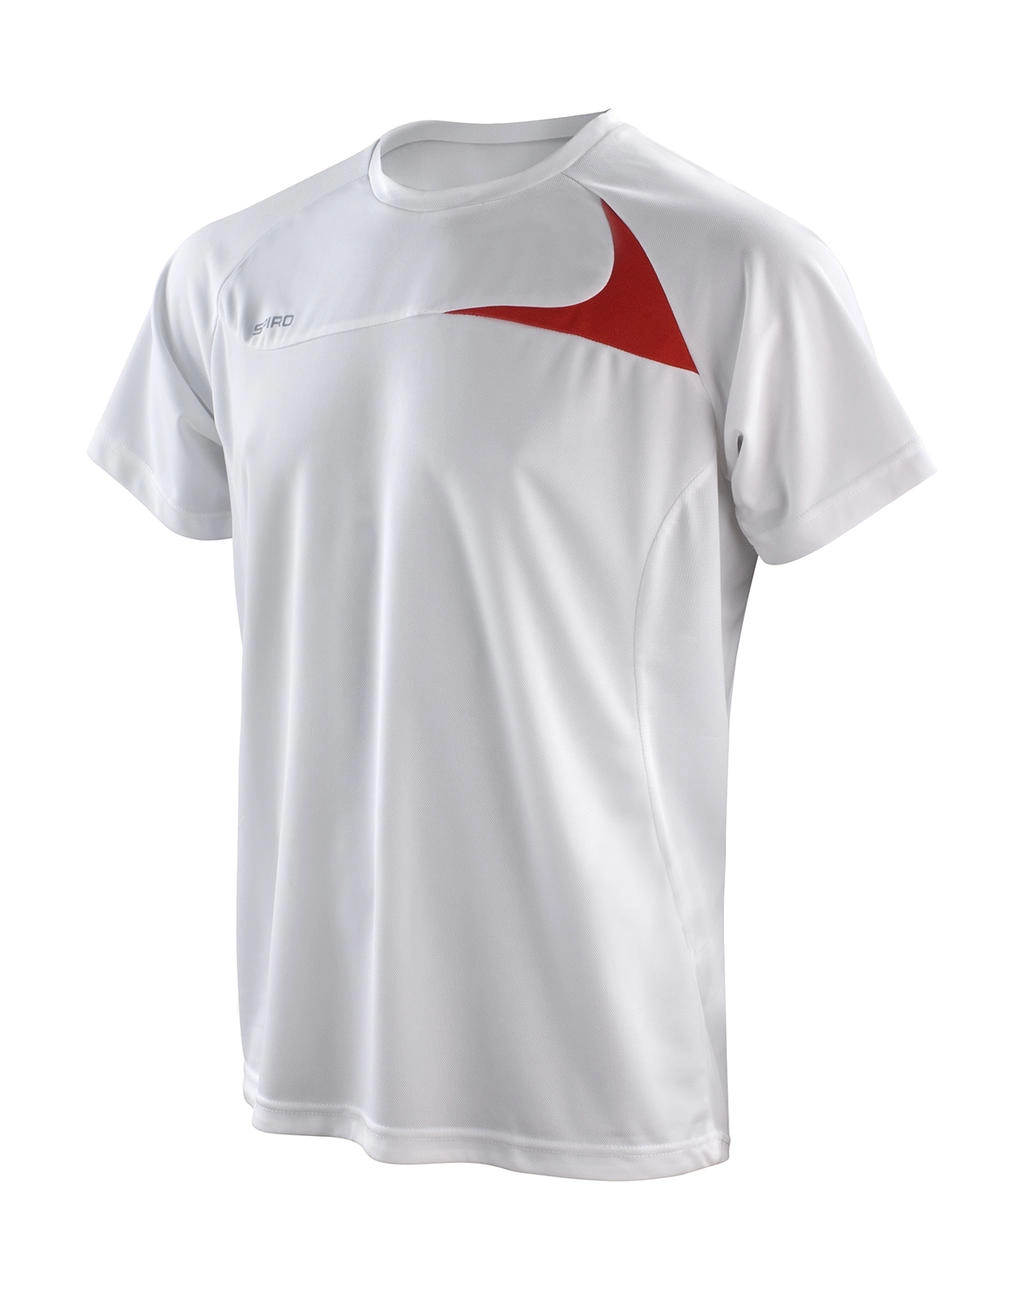 Spiro Men`s Dash Training Shirt zum Besticken und Bedrucken in der Farbe White/Red mit Ihren Logo, Schriftzug oder Motiv.